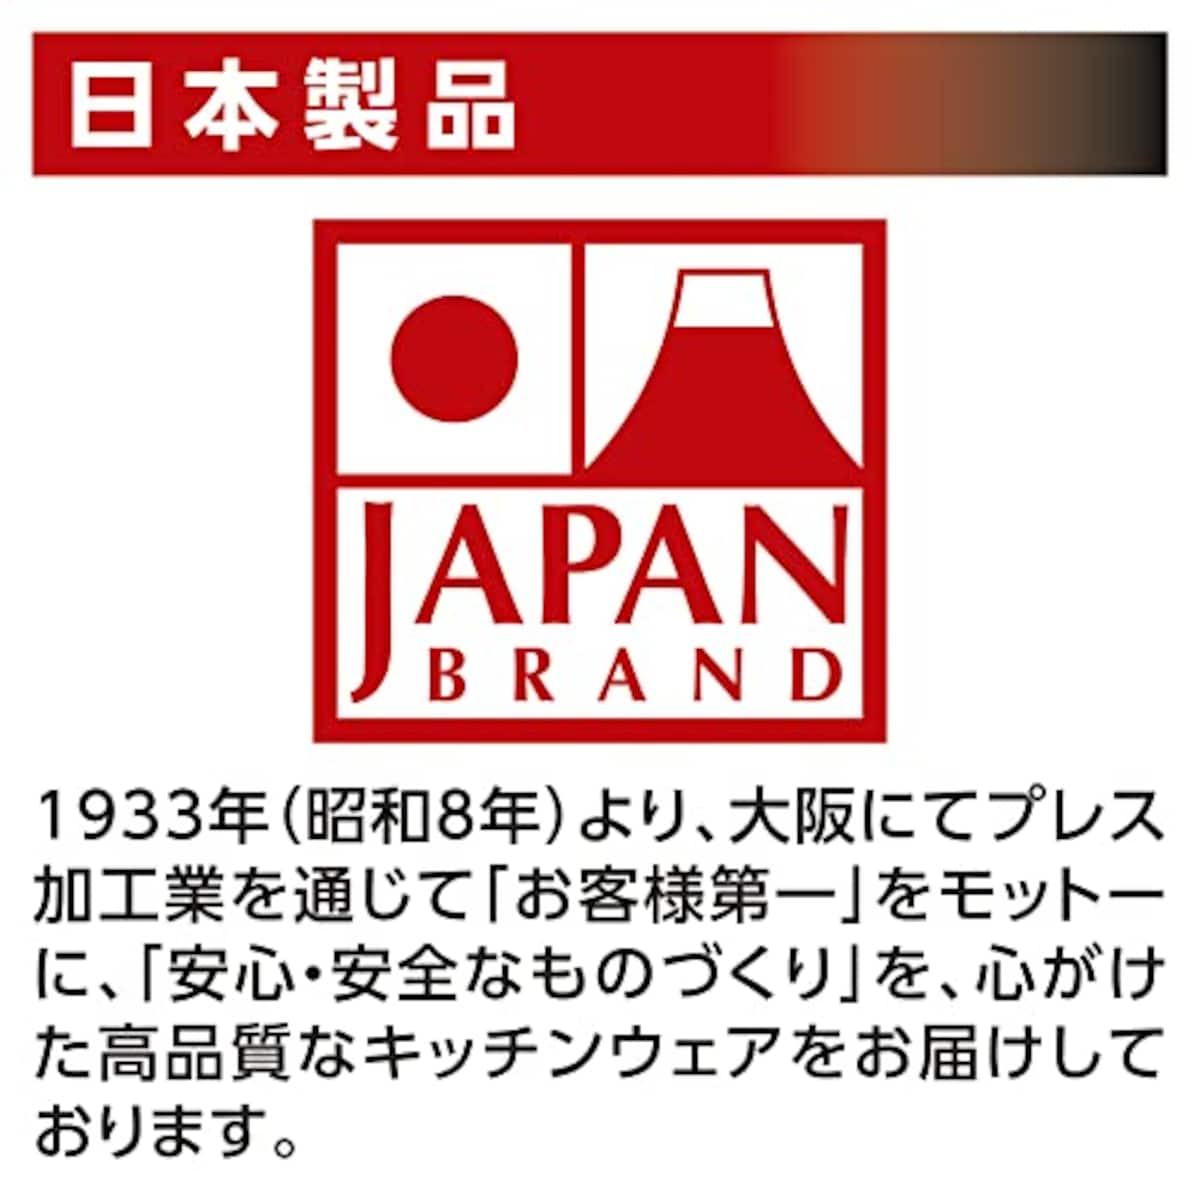  竹原製缶 和楽亭 IH深型フライパン 24cm 日本製 ブラウン画像9 